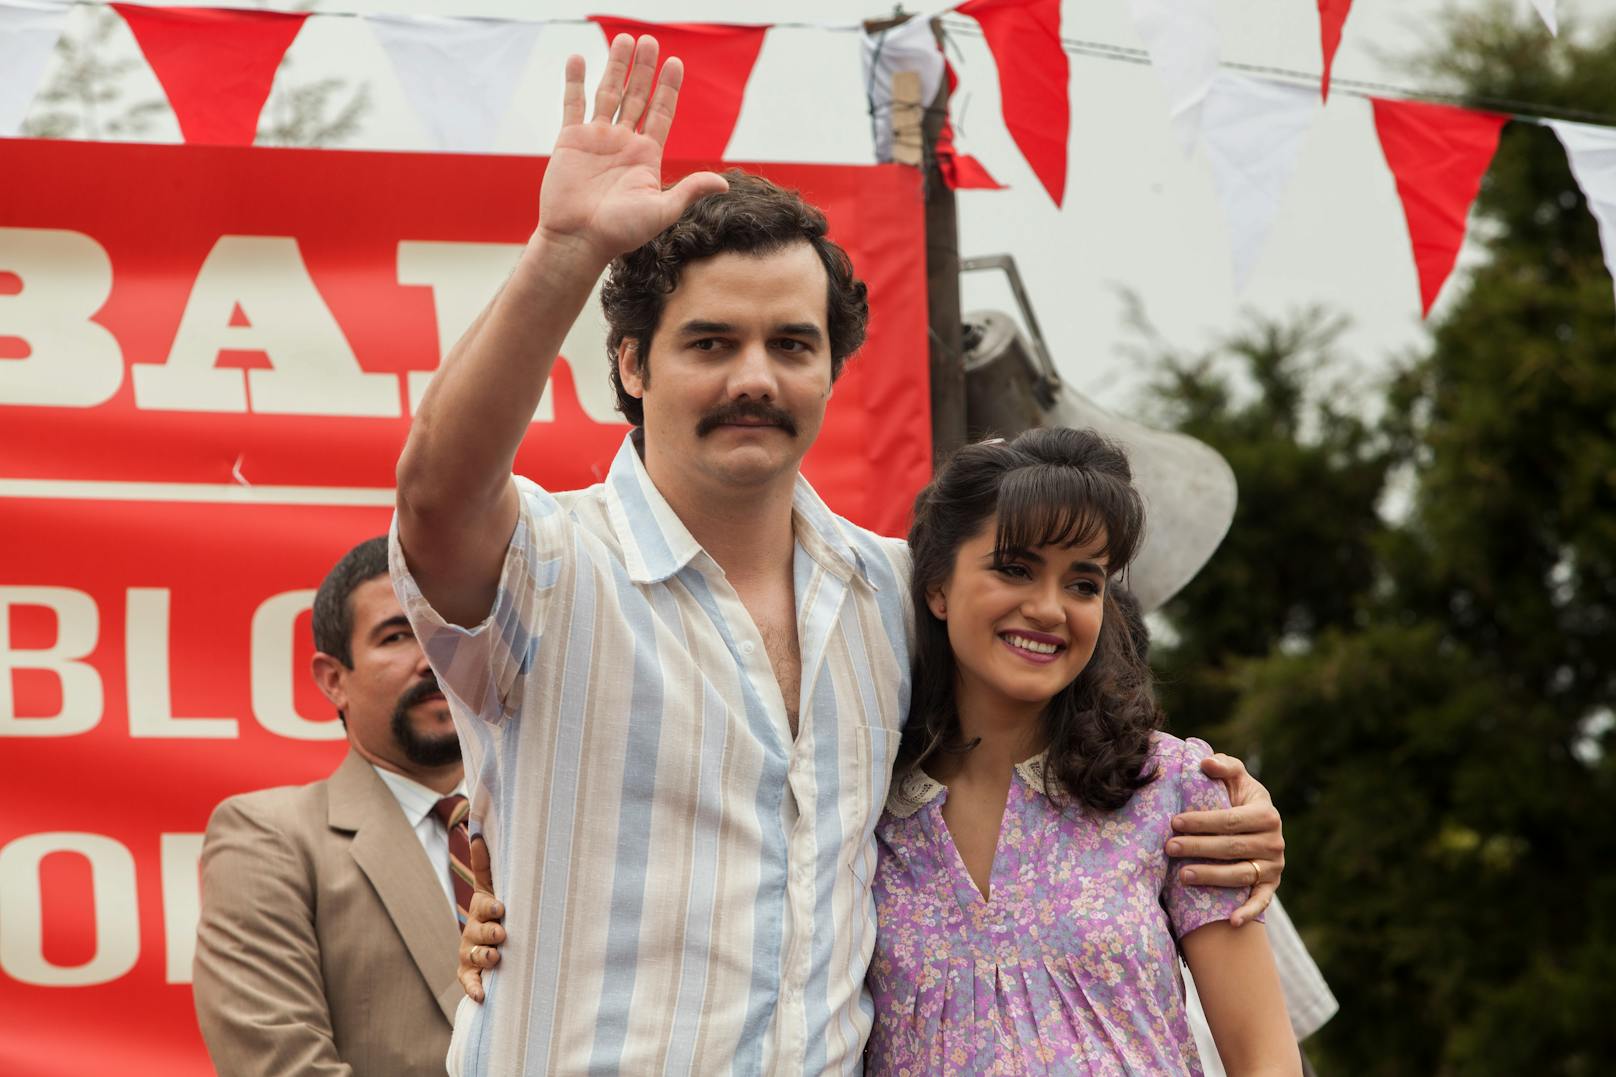 <strong>"Narcos"</strong> auf Netflix: Den kolumbianischen. Drogenbarons Pablo Escobar gab es wirklich. Das von ihm angeführte Medellin-Kartell kontrollierte in den 80er Jahren rund 80 Prozent des amerikanischen Drogenmarktes.